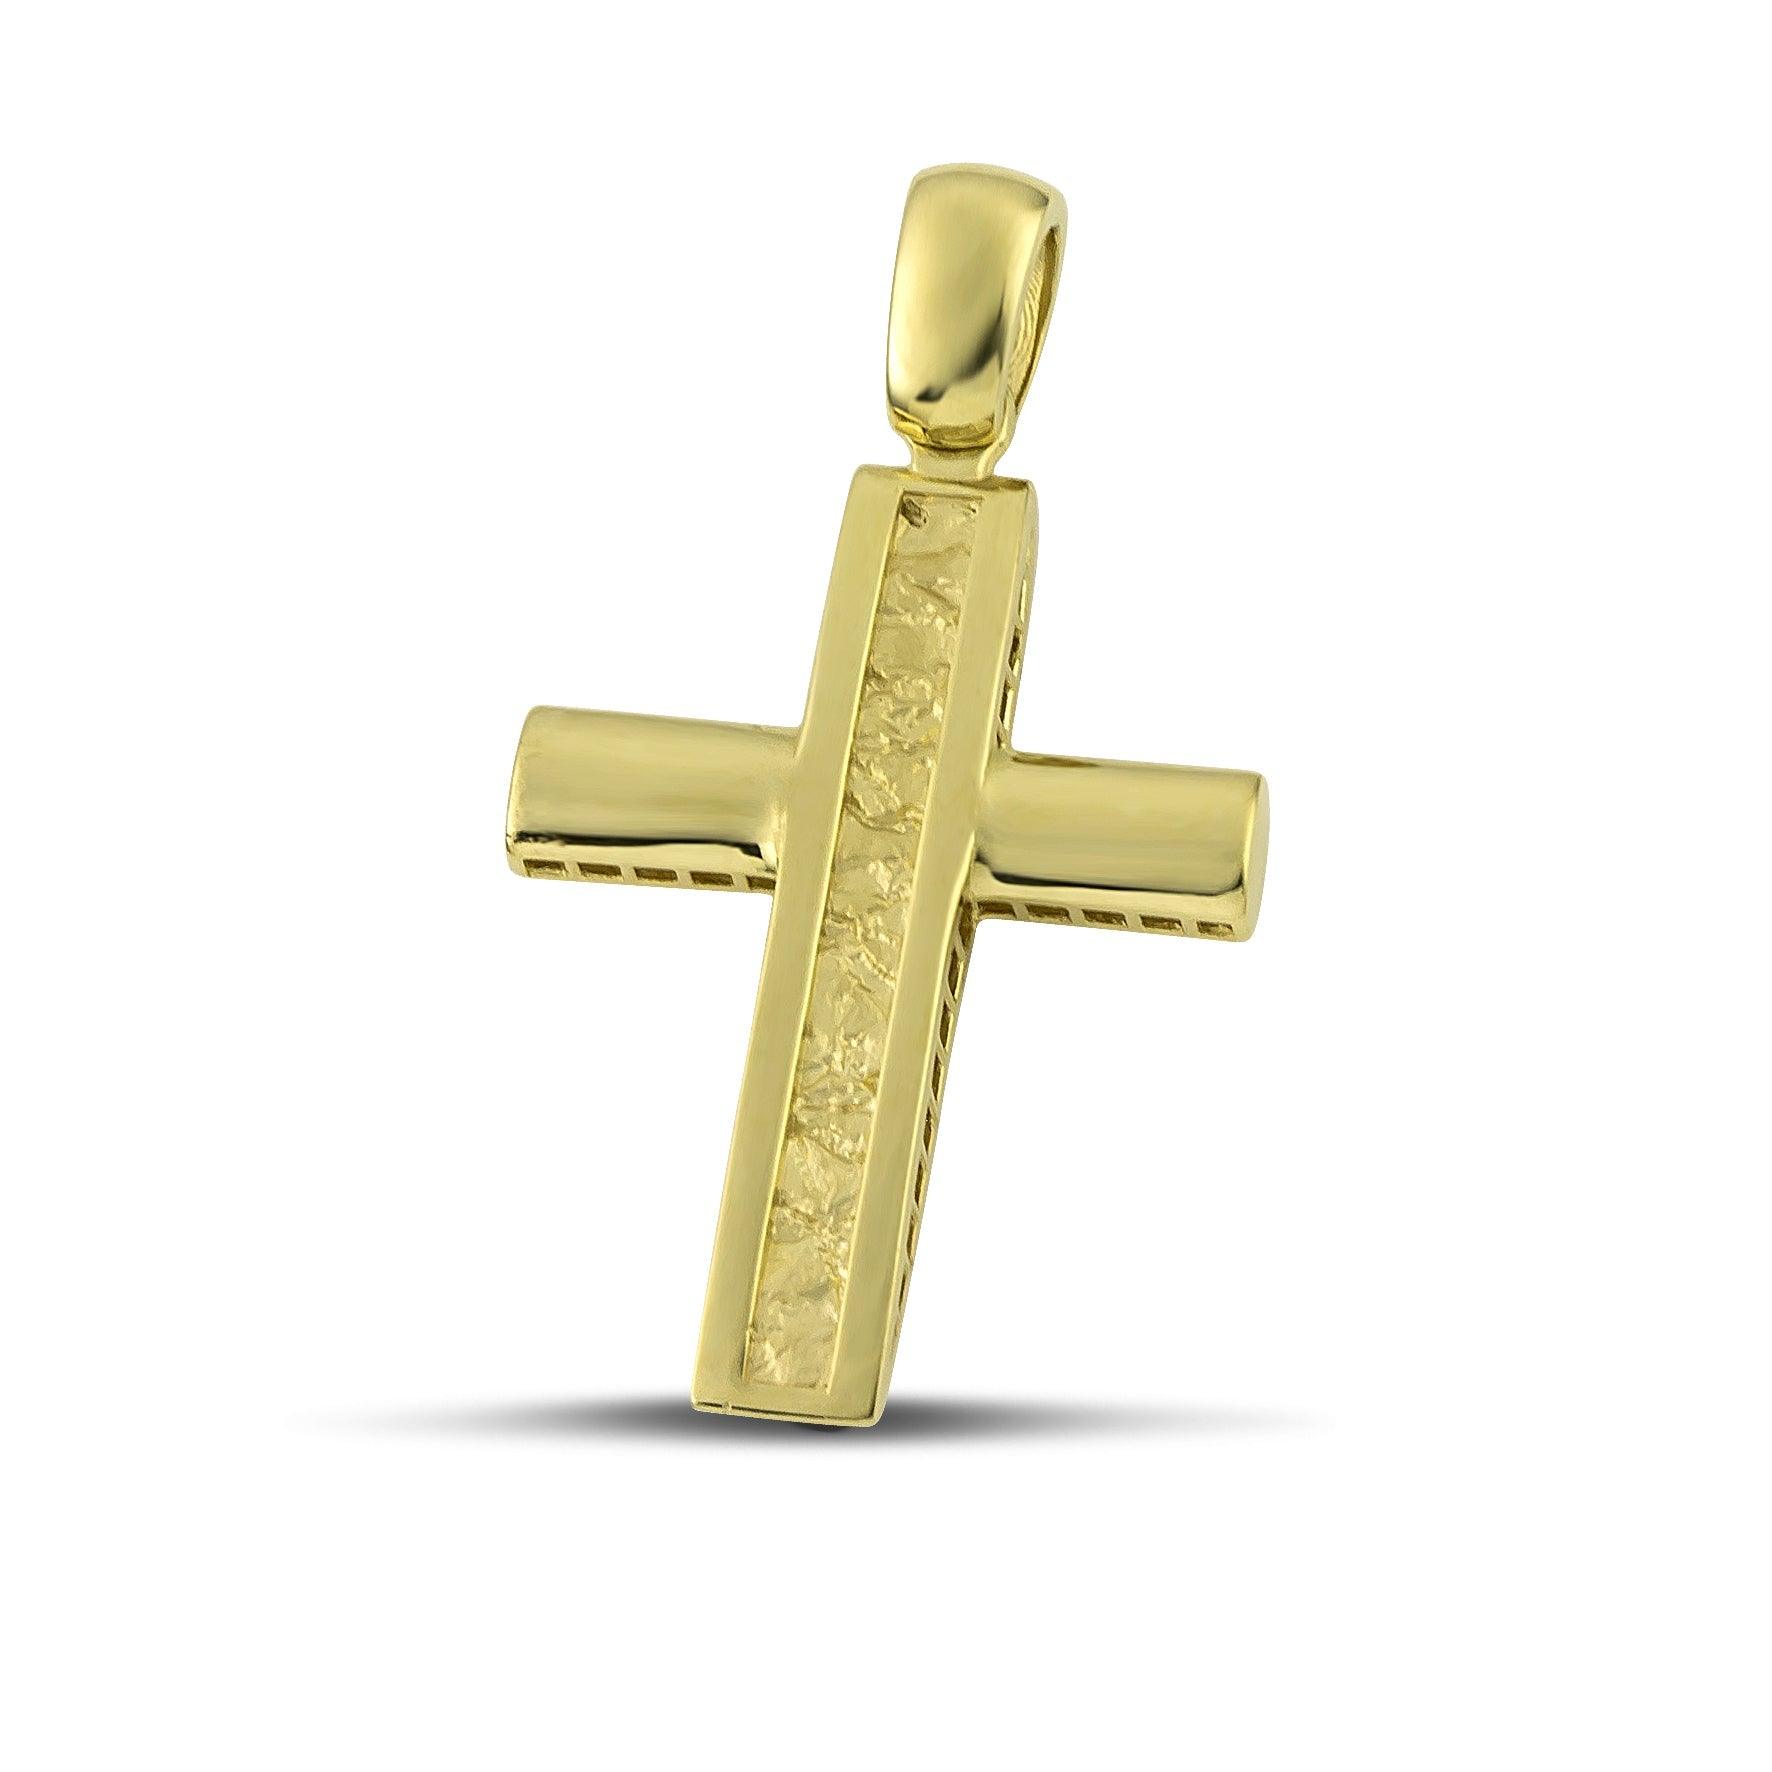 Ανδρικός σταυρός βάπτισης από χρυσό Κ14, ανάγλυφος. 